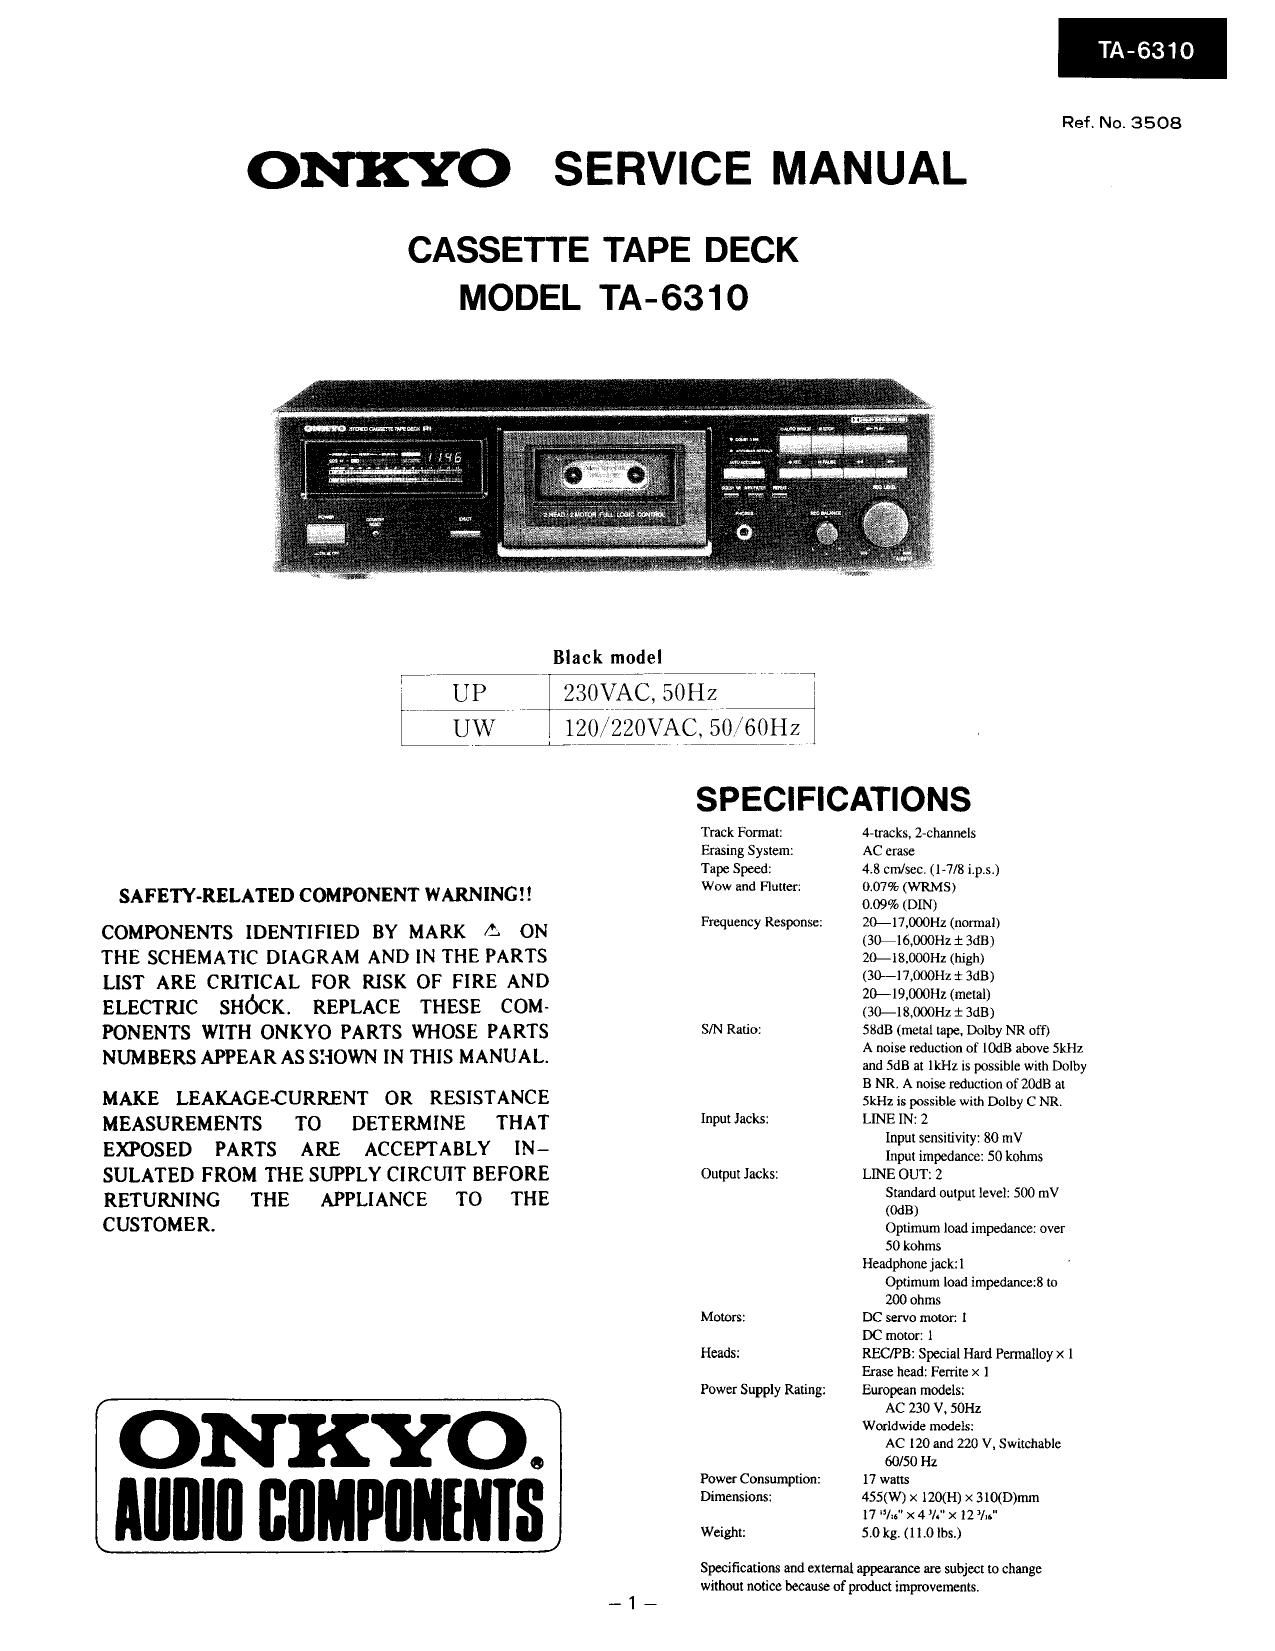 Onkyo TA 6310 Service Manual